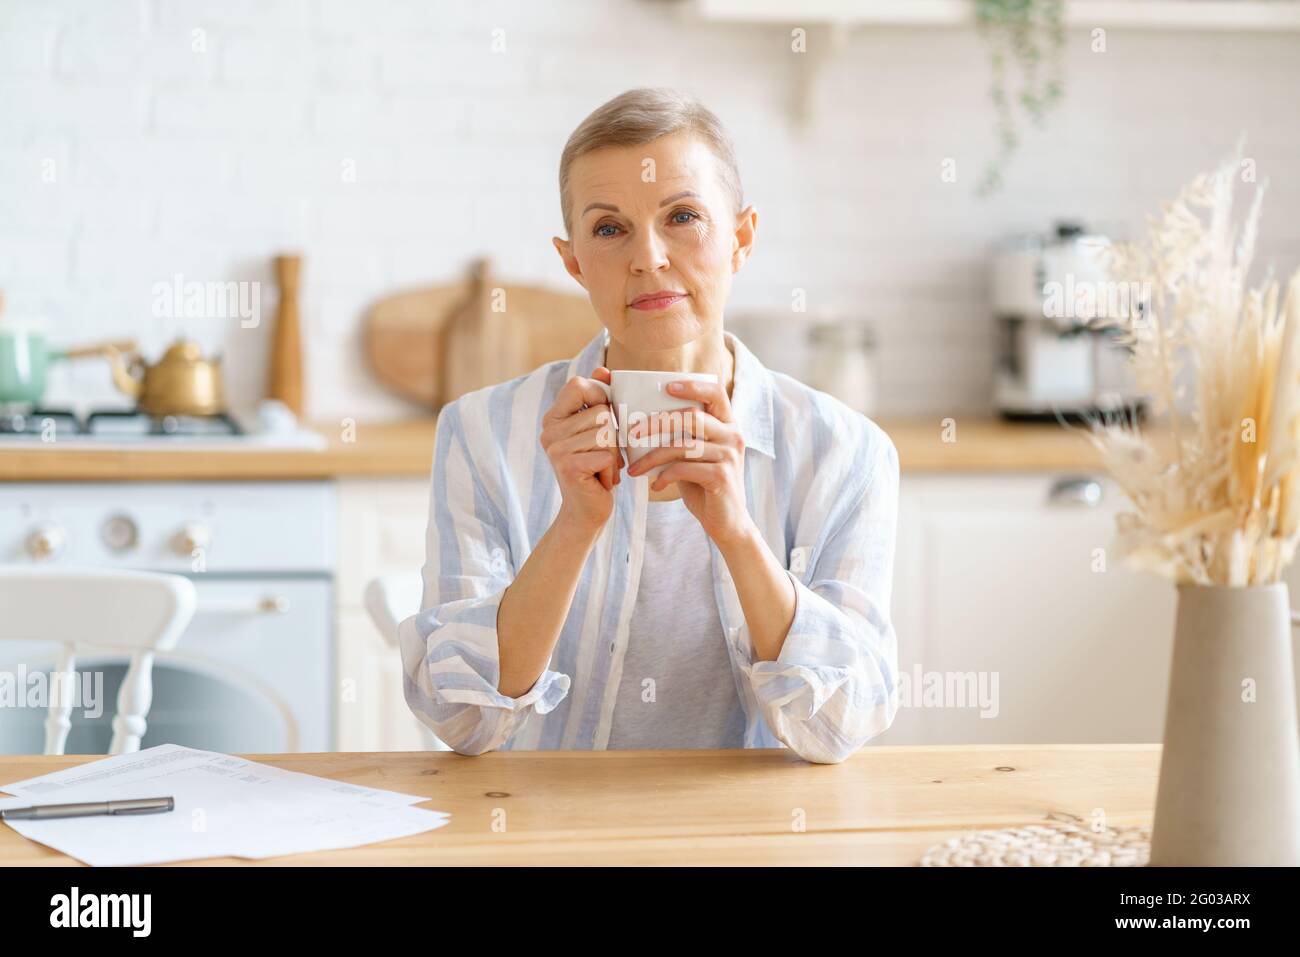 Morgengetränk. Schöne ältere Frau, die zur Kamera schaut und Kaffee oder Tee trinkt und dabei an etwas denkt, während sie am Holztisch in der Küche sitzt, selektiver Fokus auf Frau. Der Lebensstil der reifen Menschen Stockfoto